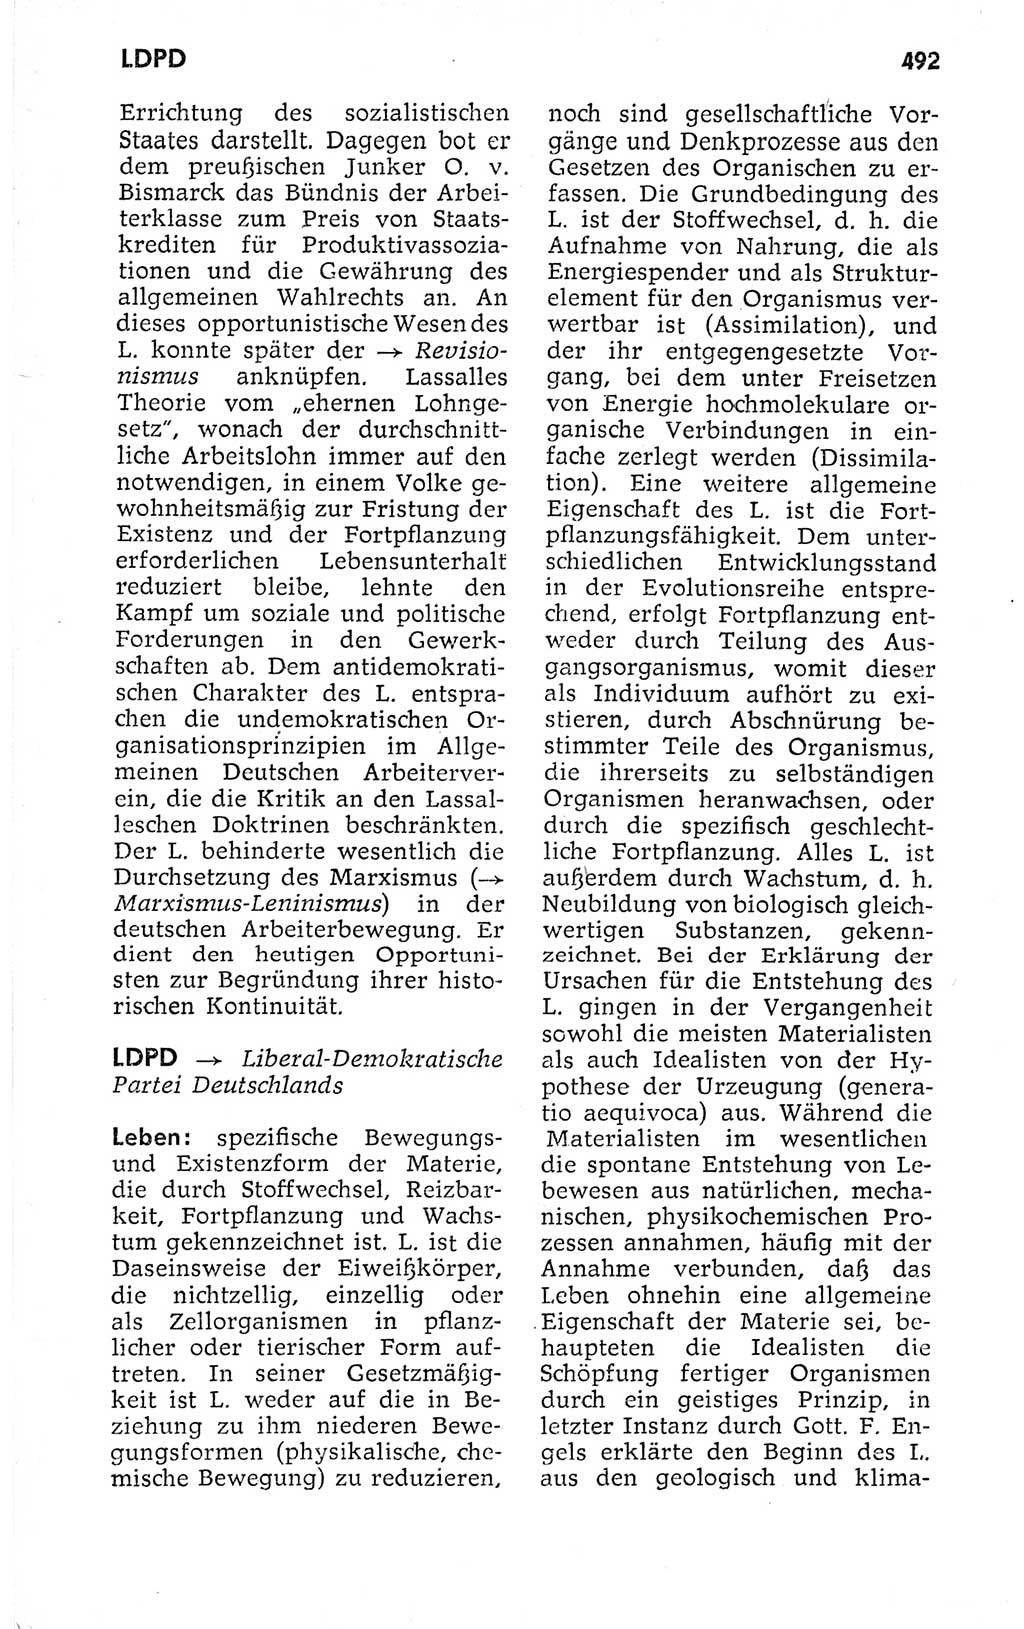 Kleines politisches Wörterbuch [Deutsche Demokratische Republik (DDR)] 1973, Seite 492 (Kl. pol. Wb. DDR 1973, S. 492)